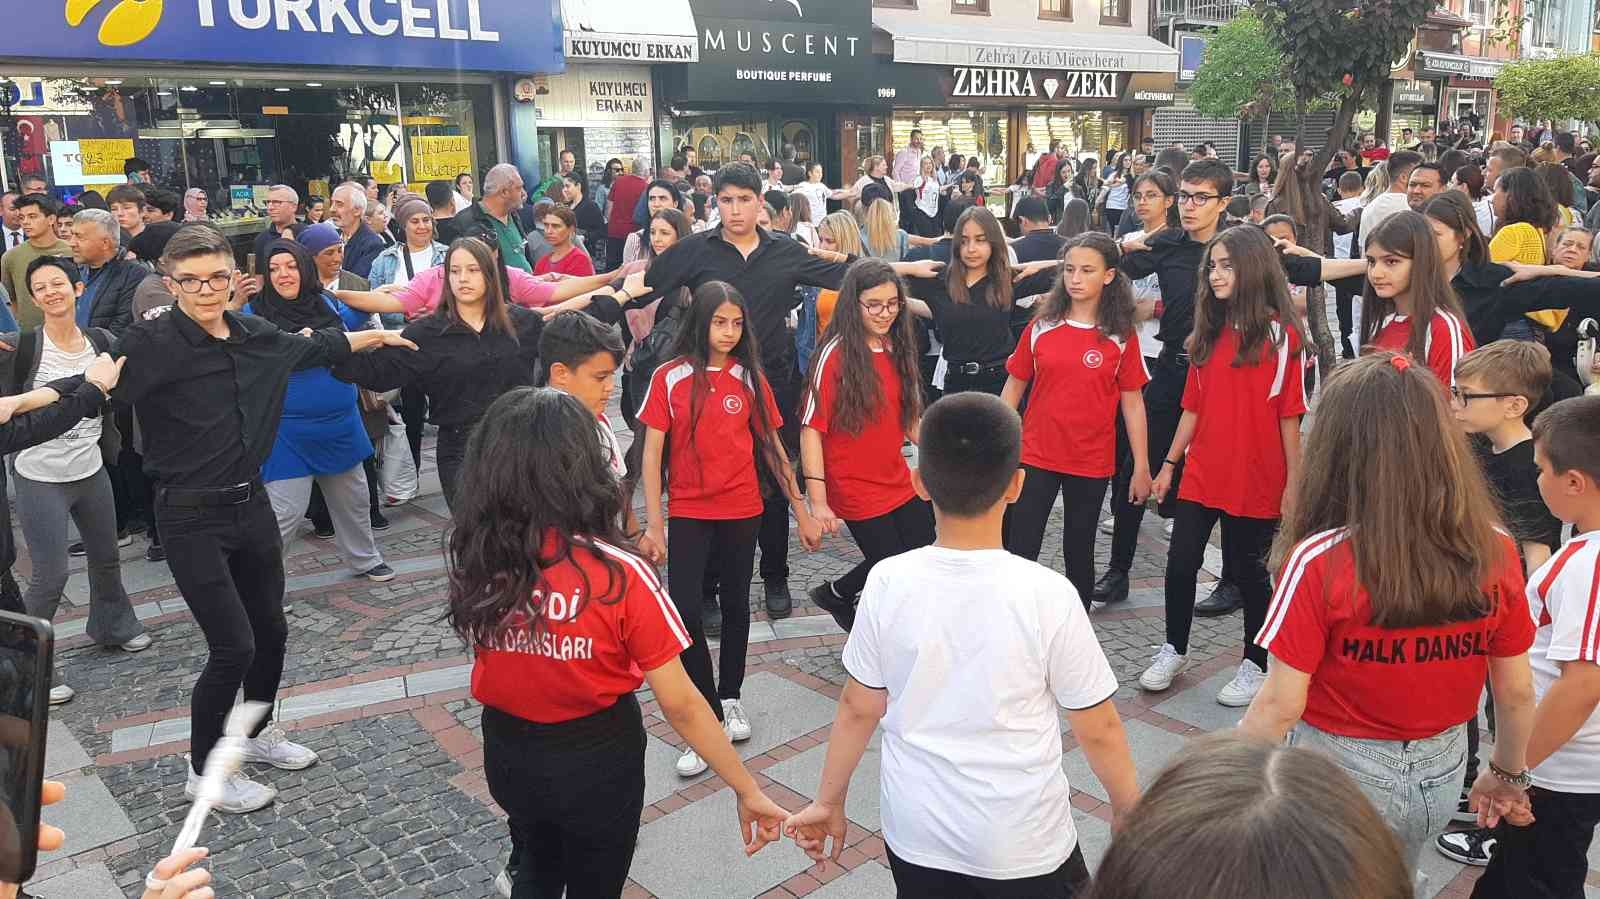 Edirne’de 19 Mayıs Atatürk’ü Anma Gençlik ve Spor Bayramı kutlamaları çerçevesinde düzenlenen etkinlikte 1919 kişi aynı anda halay çekti. Edirne ...